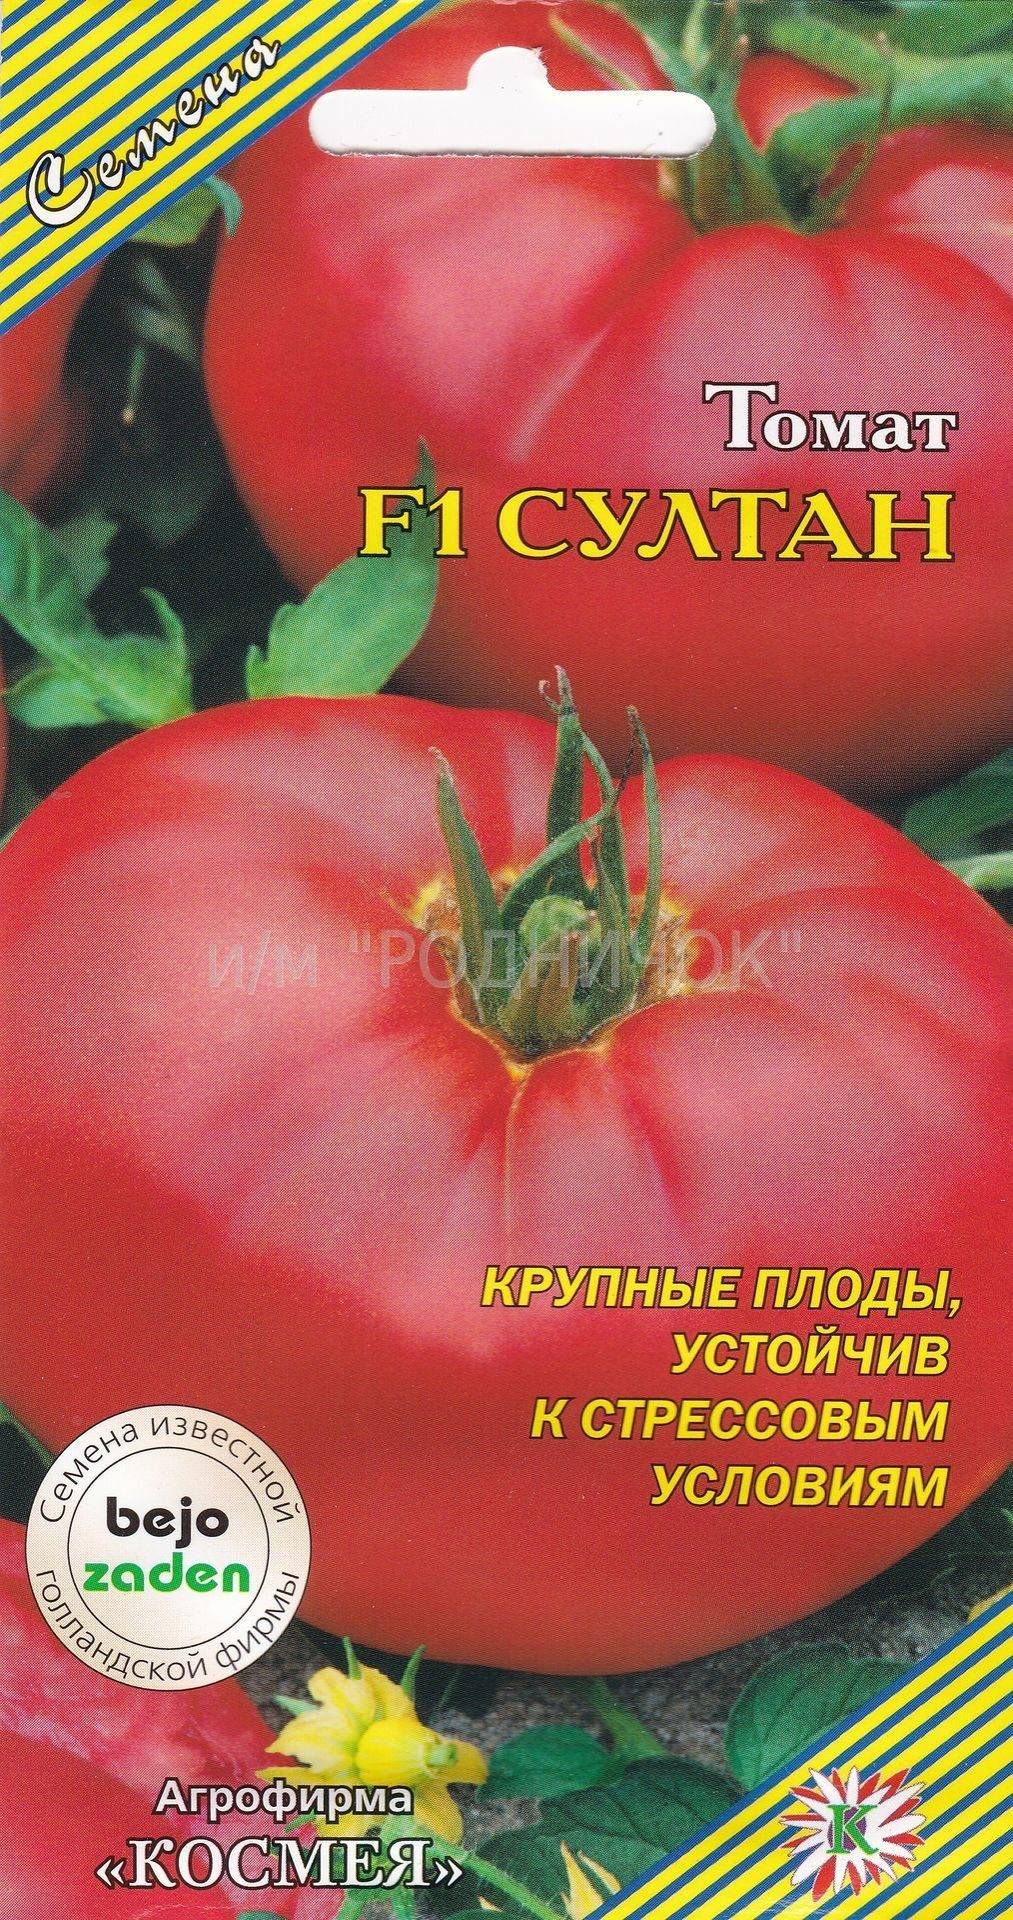 Томат "премиум f1": описание сорта, способа выращивания и фото помидор русский фермер